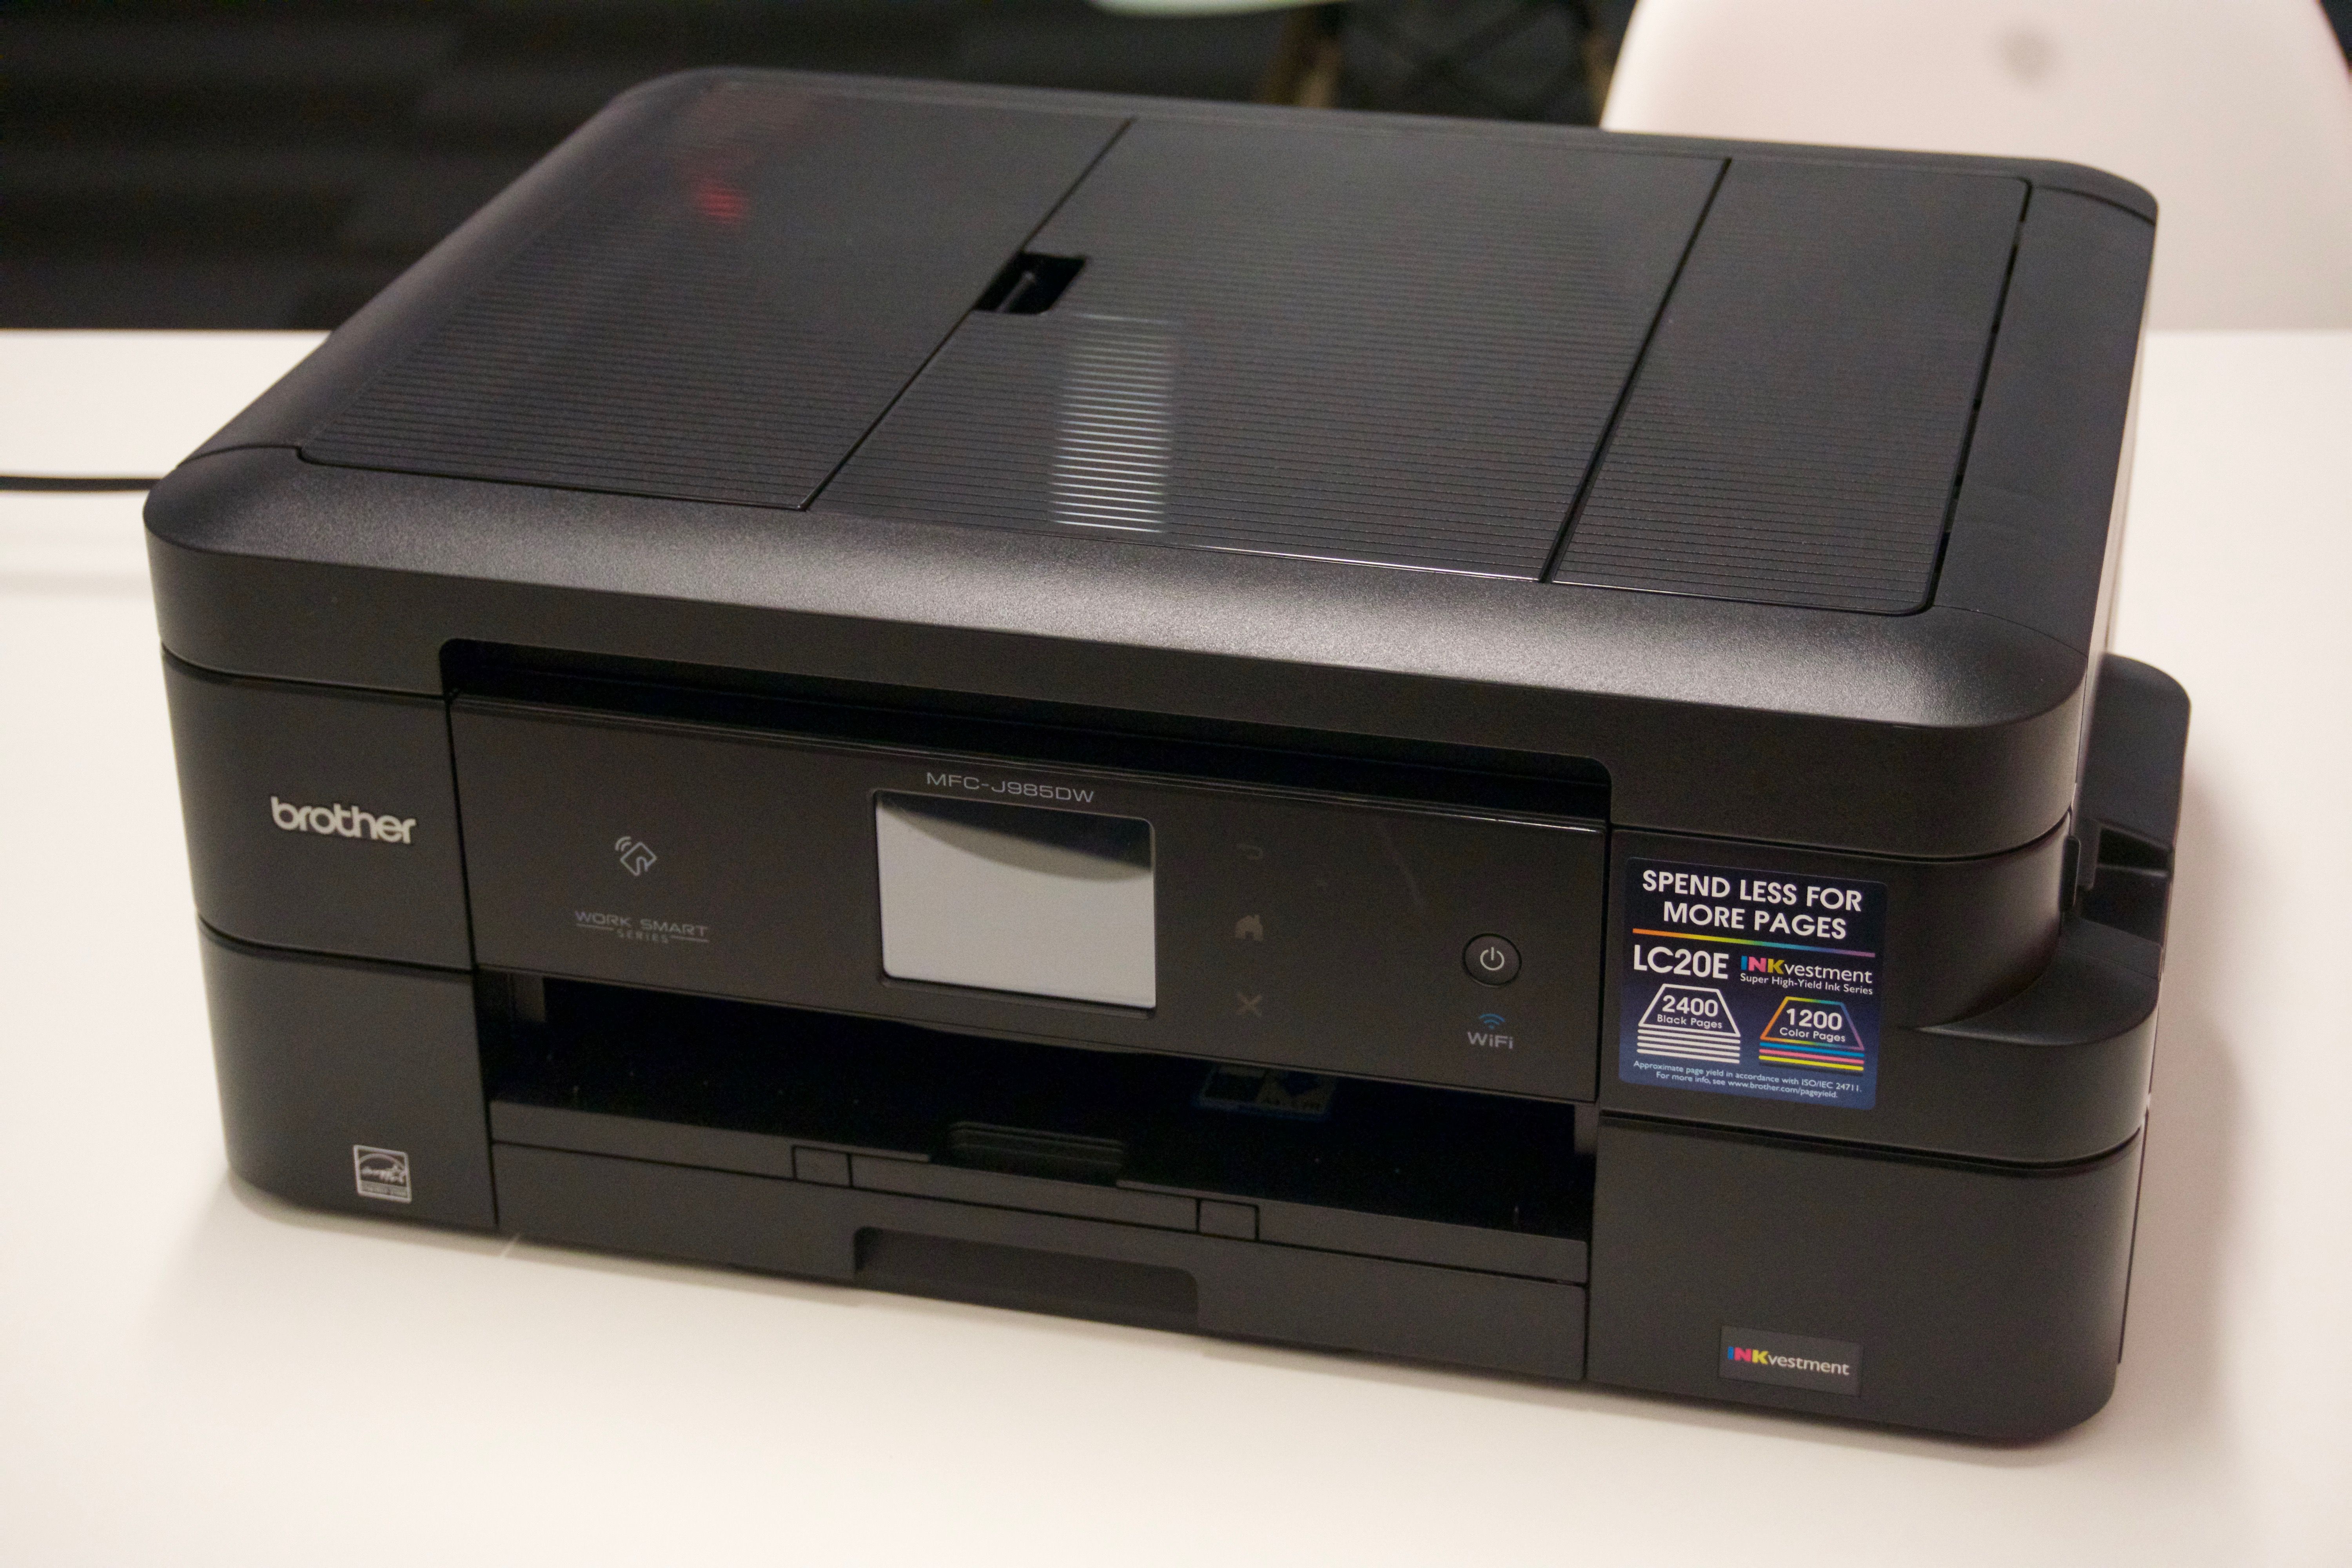 best printer scanner for mac wireless